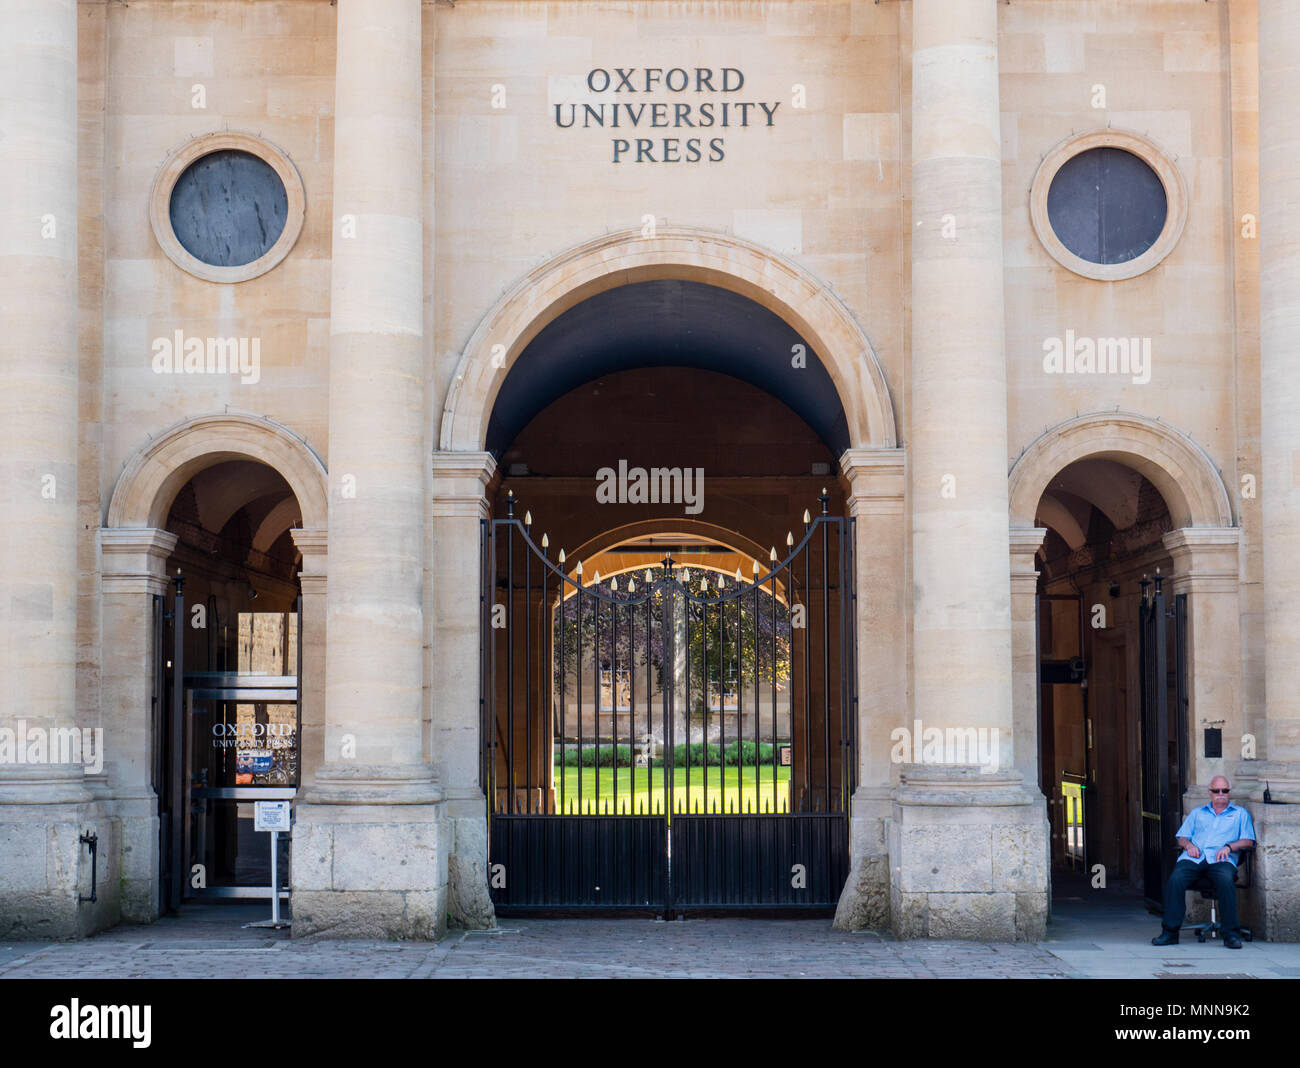 Oxford University Press, Weltgrößte University Press, Oxford, Oxfordshire, England, UK, GB. Stockfoto